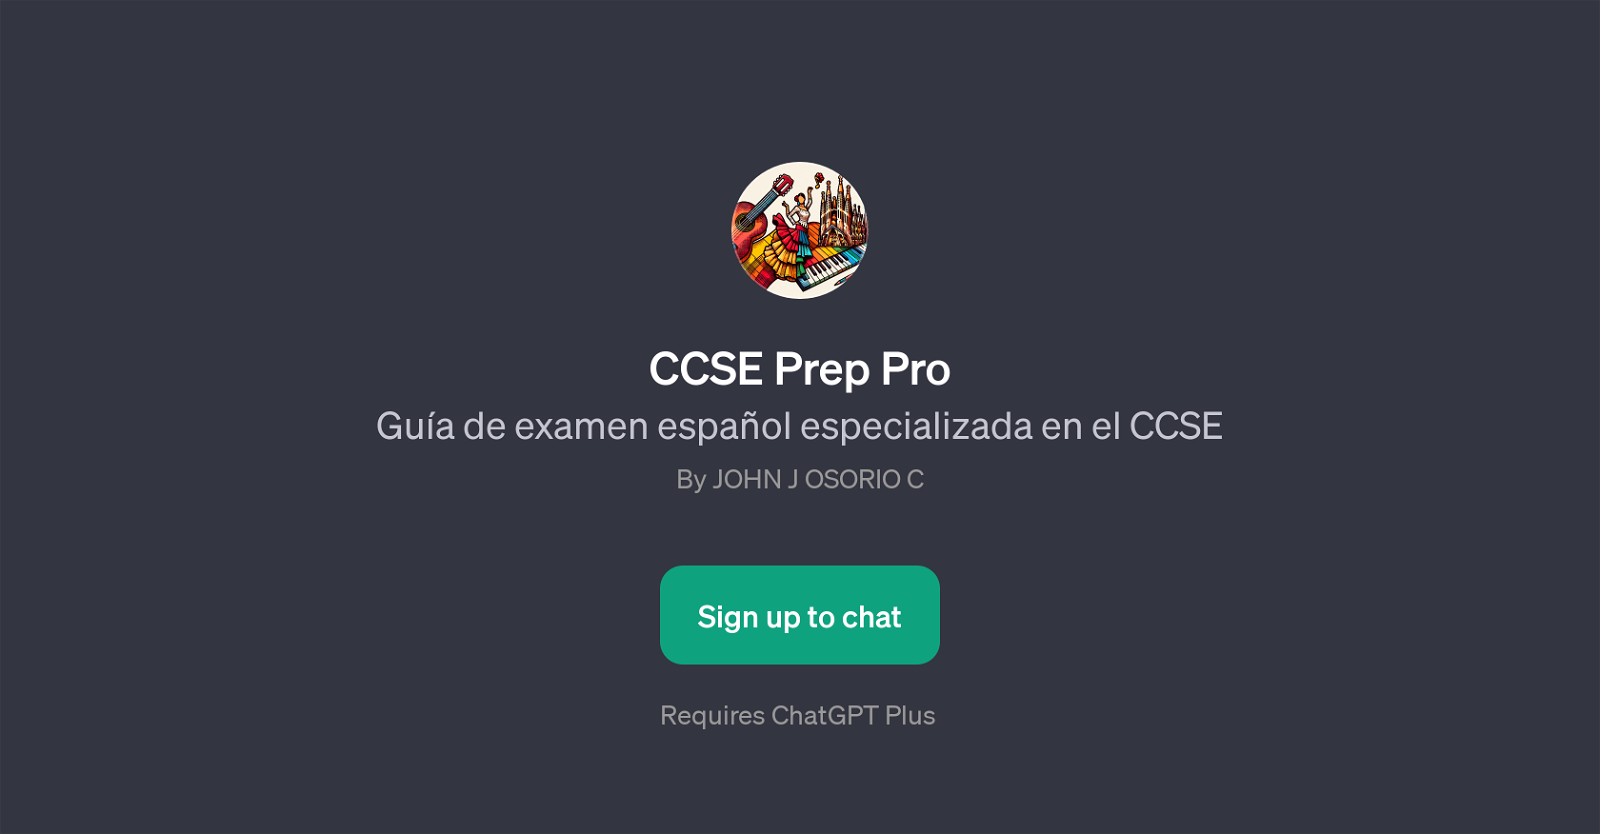 CCSE Prep Pro website